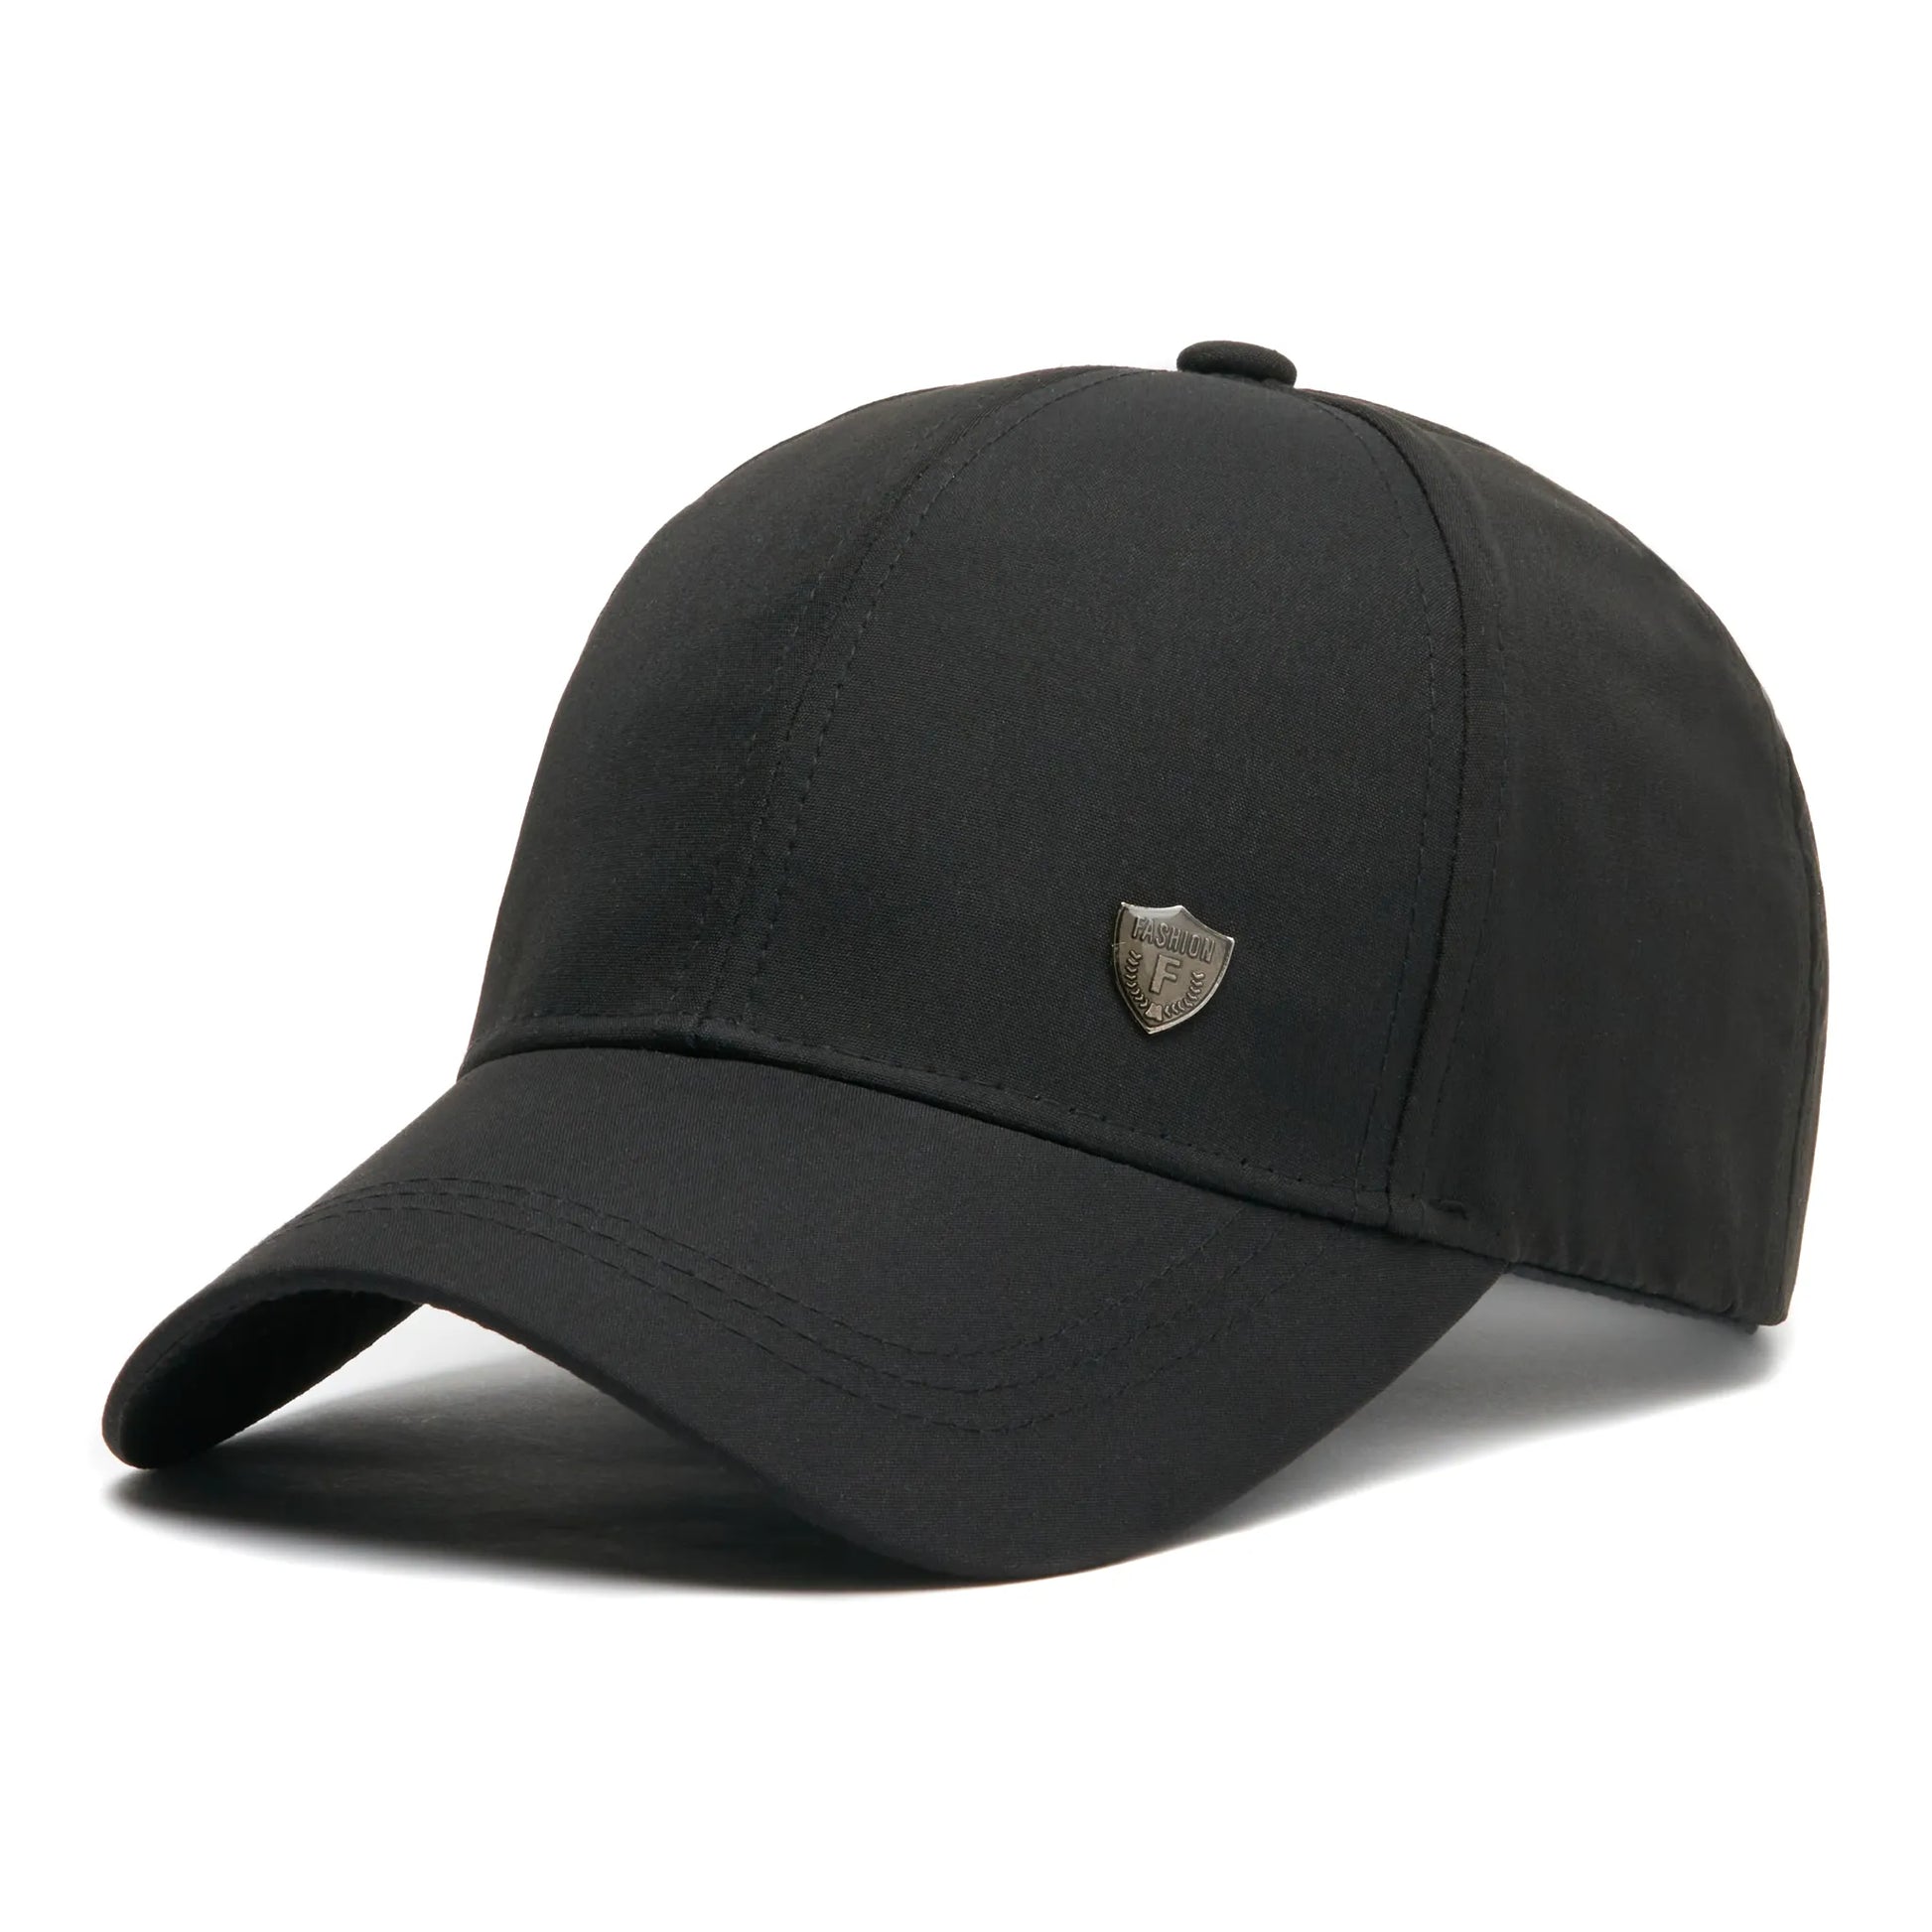 Șapcă neagră din stofă, logo metalic Fashion, mărime universală prin cataramă reglabilă.